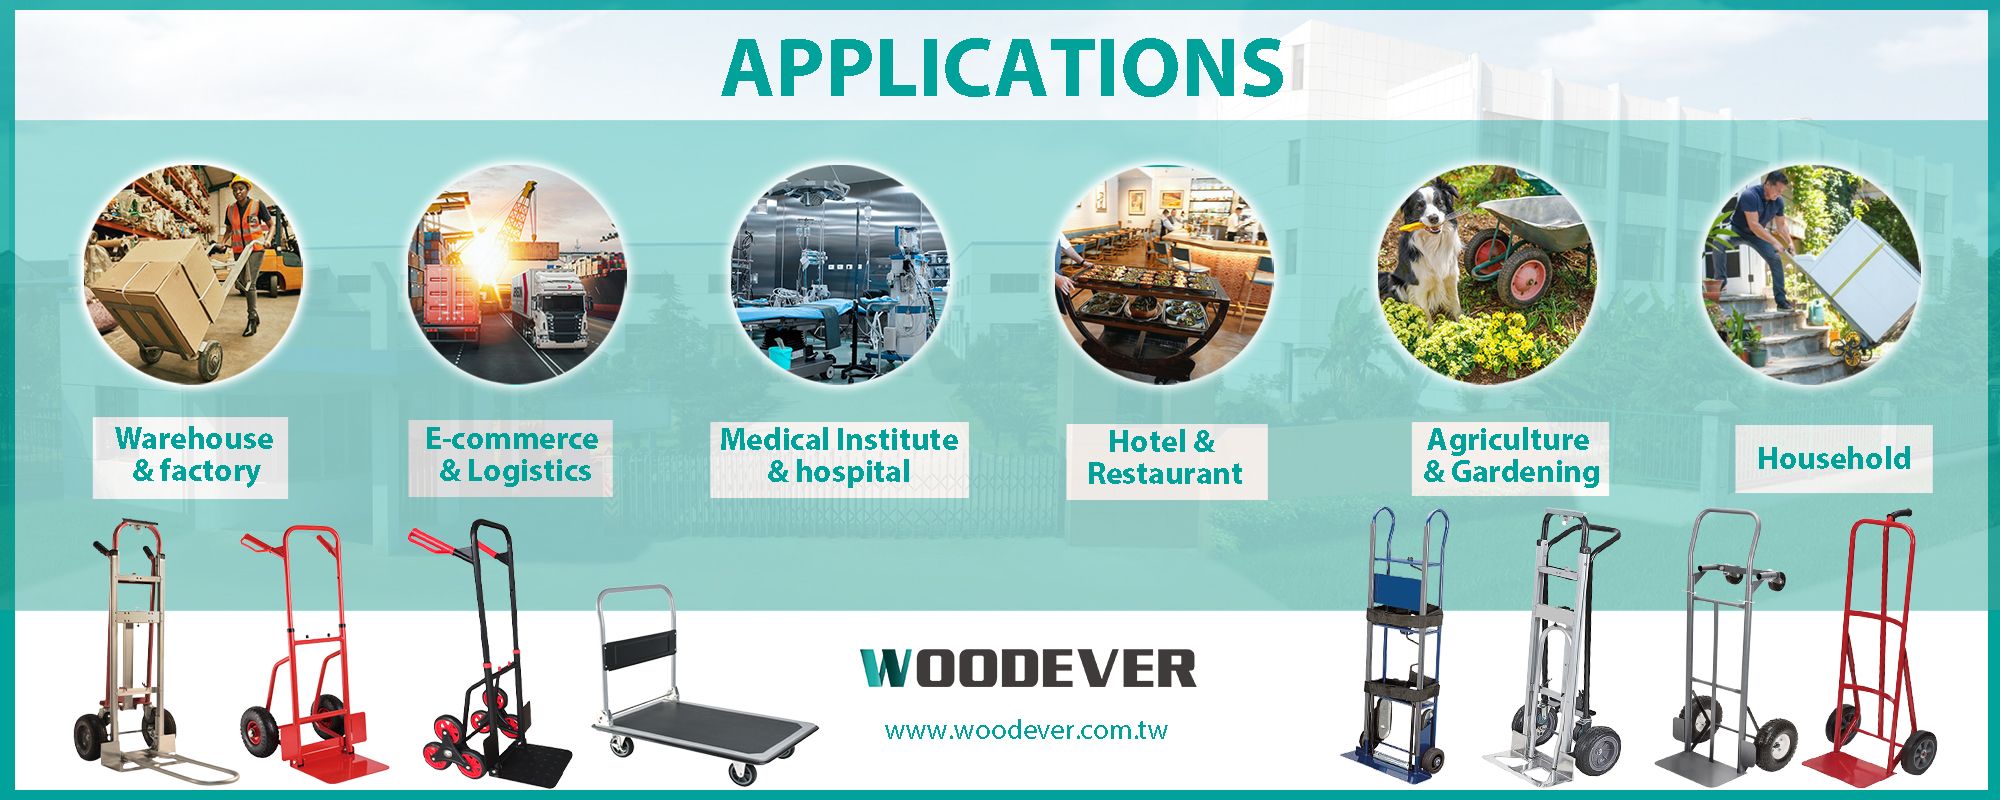 Aplicaciones de carretillas en diversas industrias como logística, médica, hotelera y restaurantera